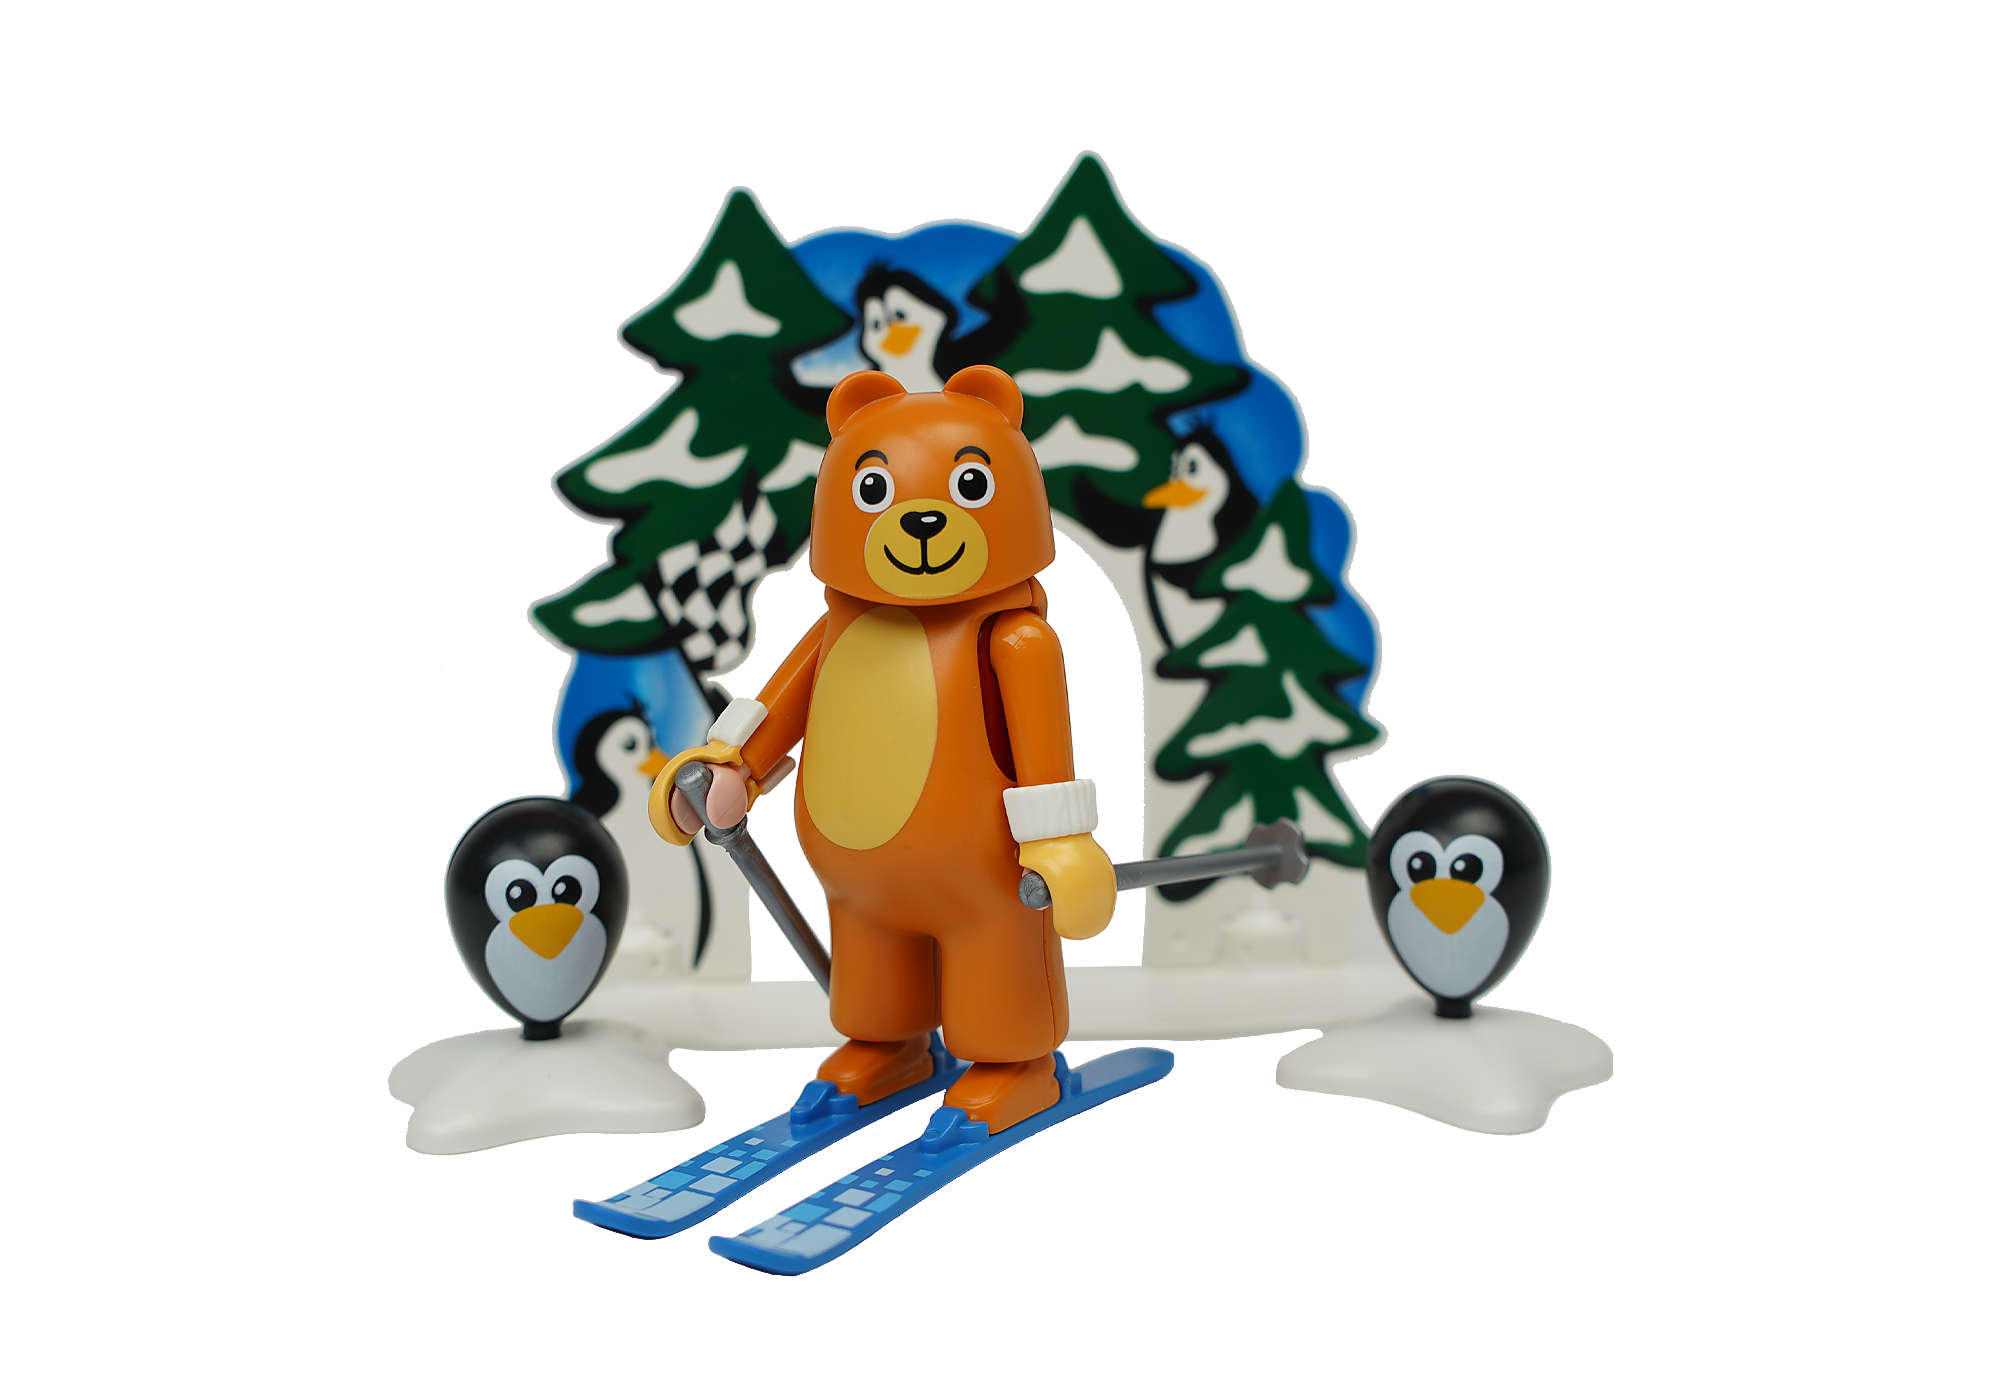 Playmobil family fun ski - achat playmobil video en francais 